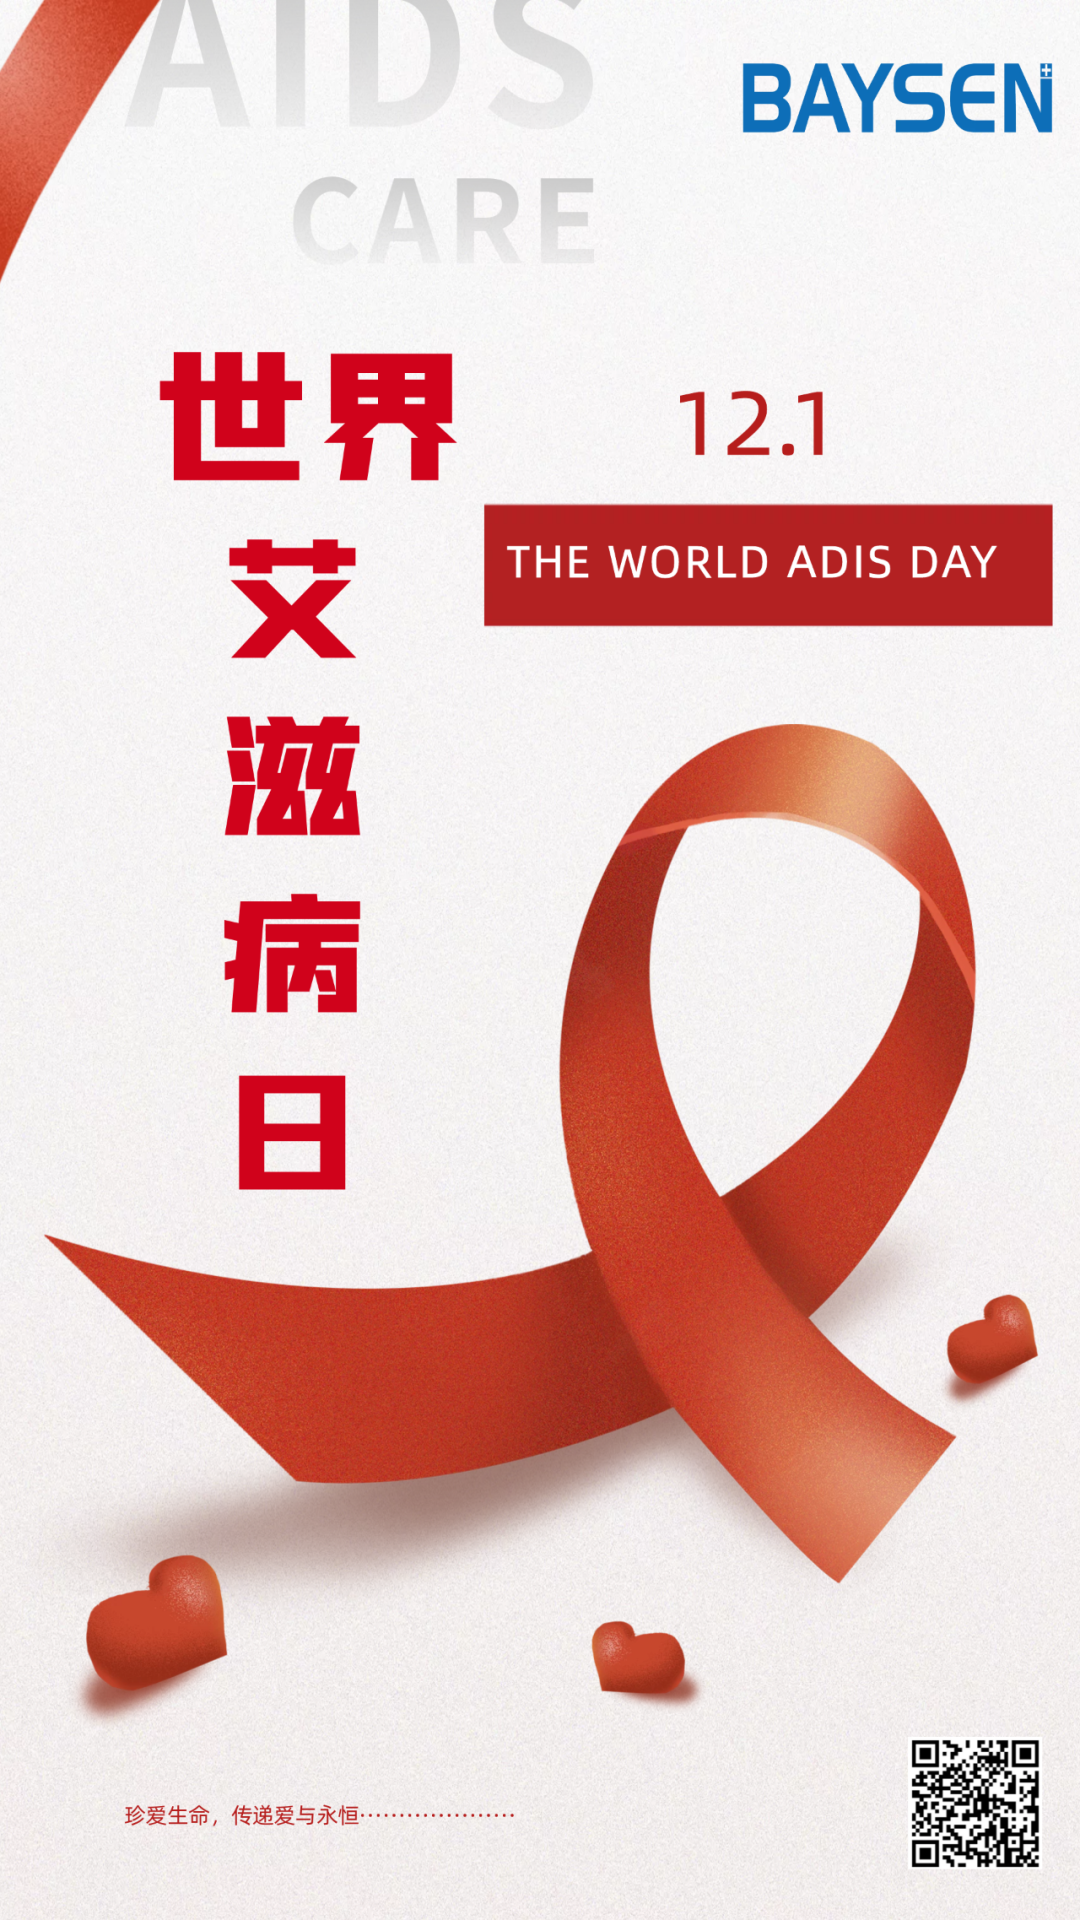 ایڈز کا عالمی دن